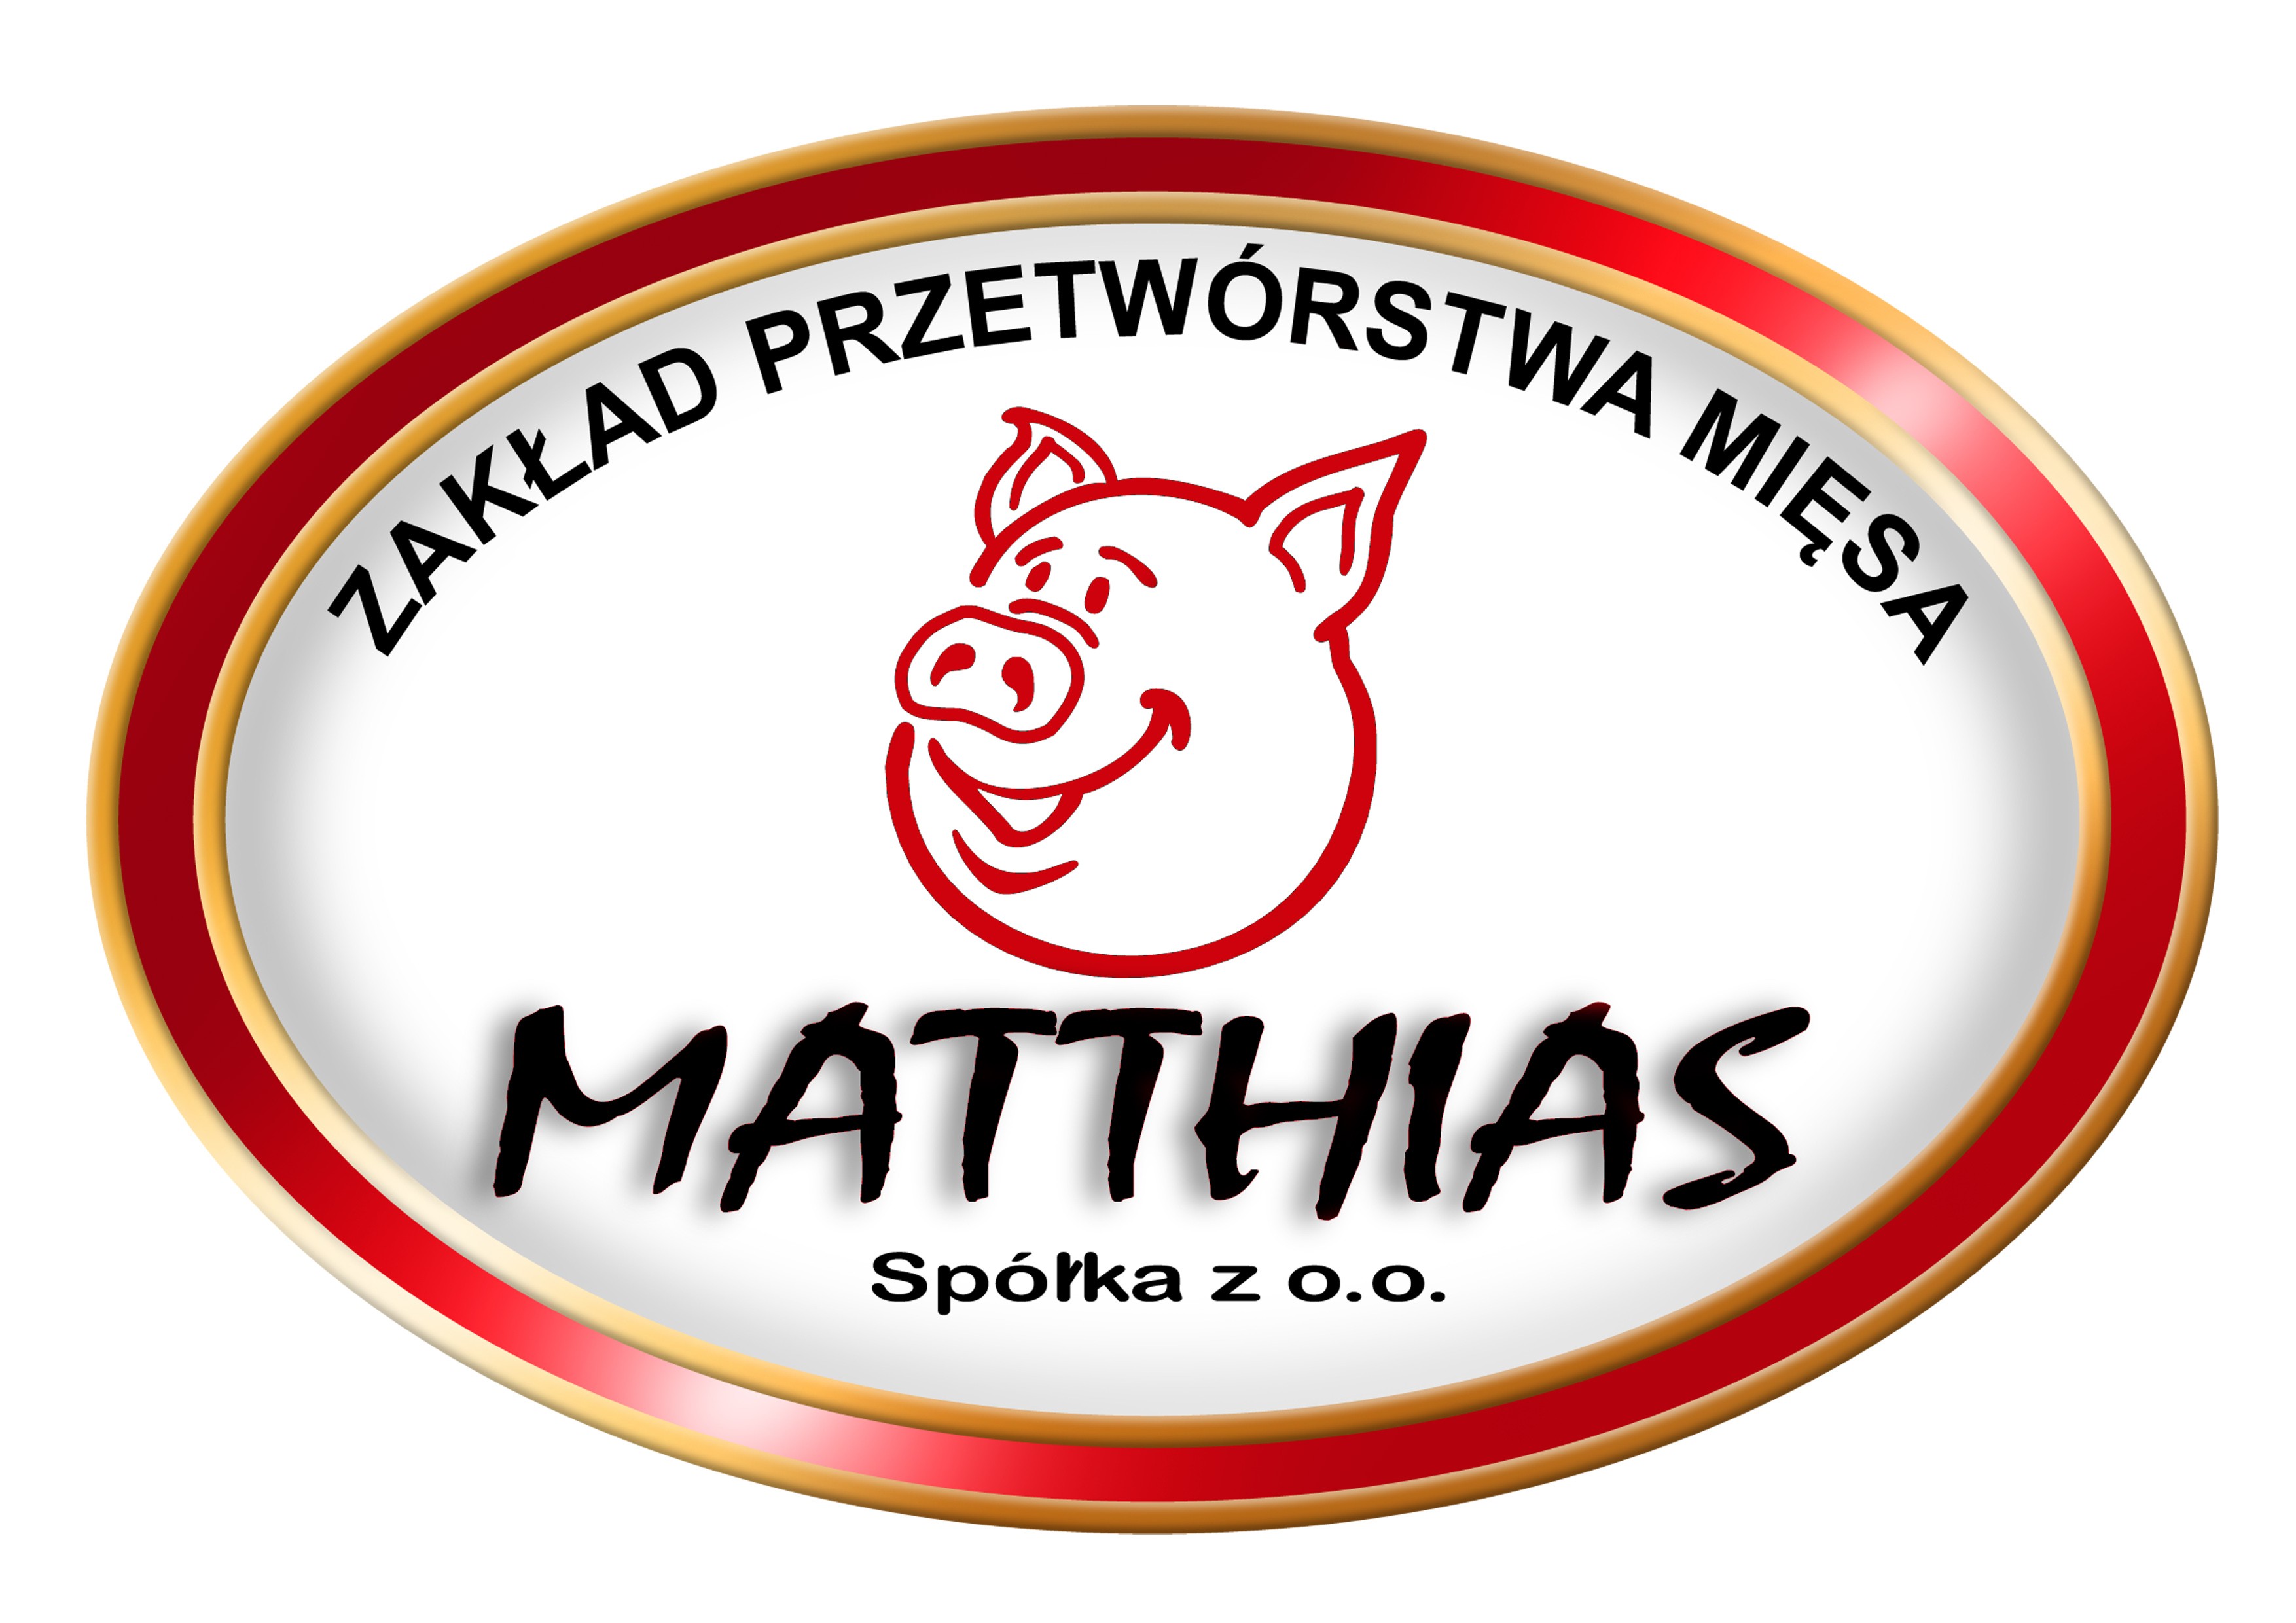 Matthias logo